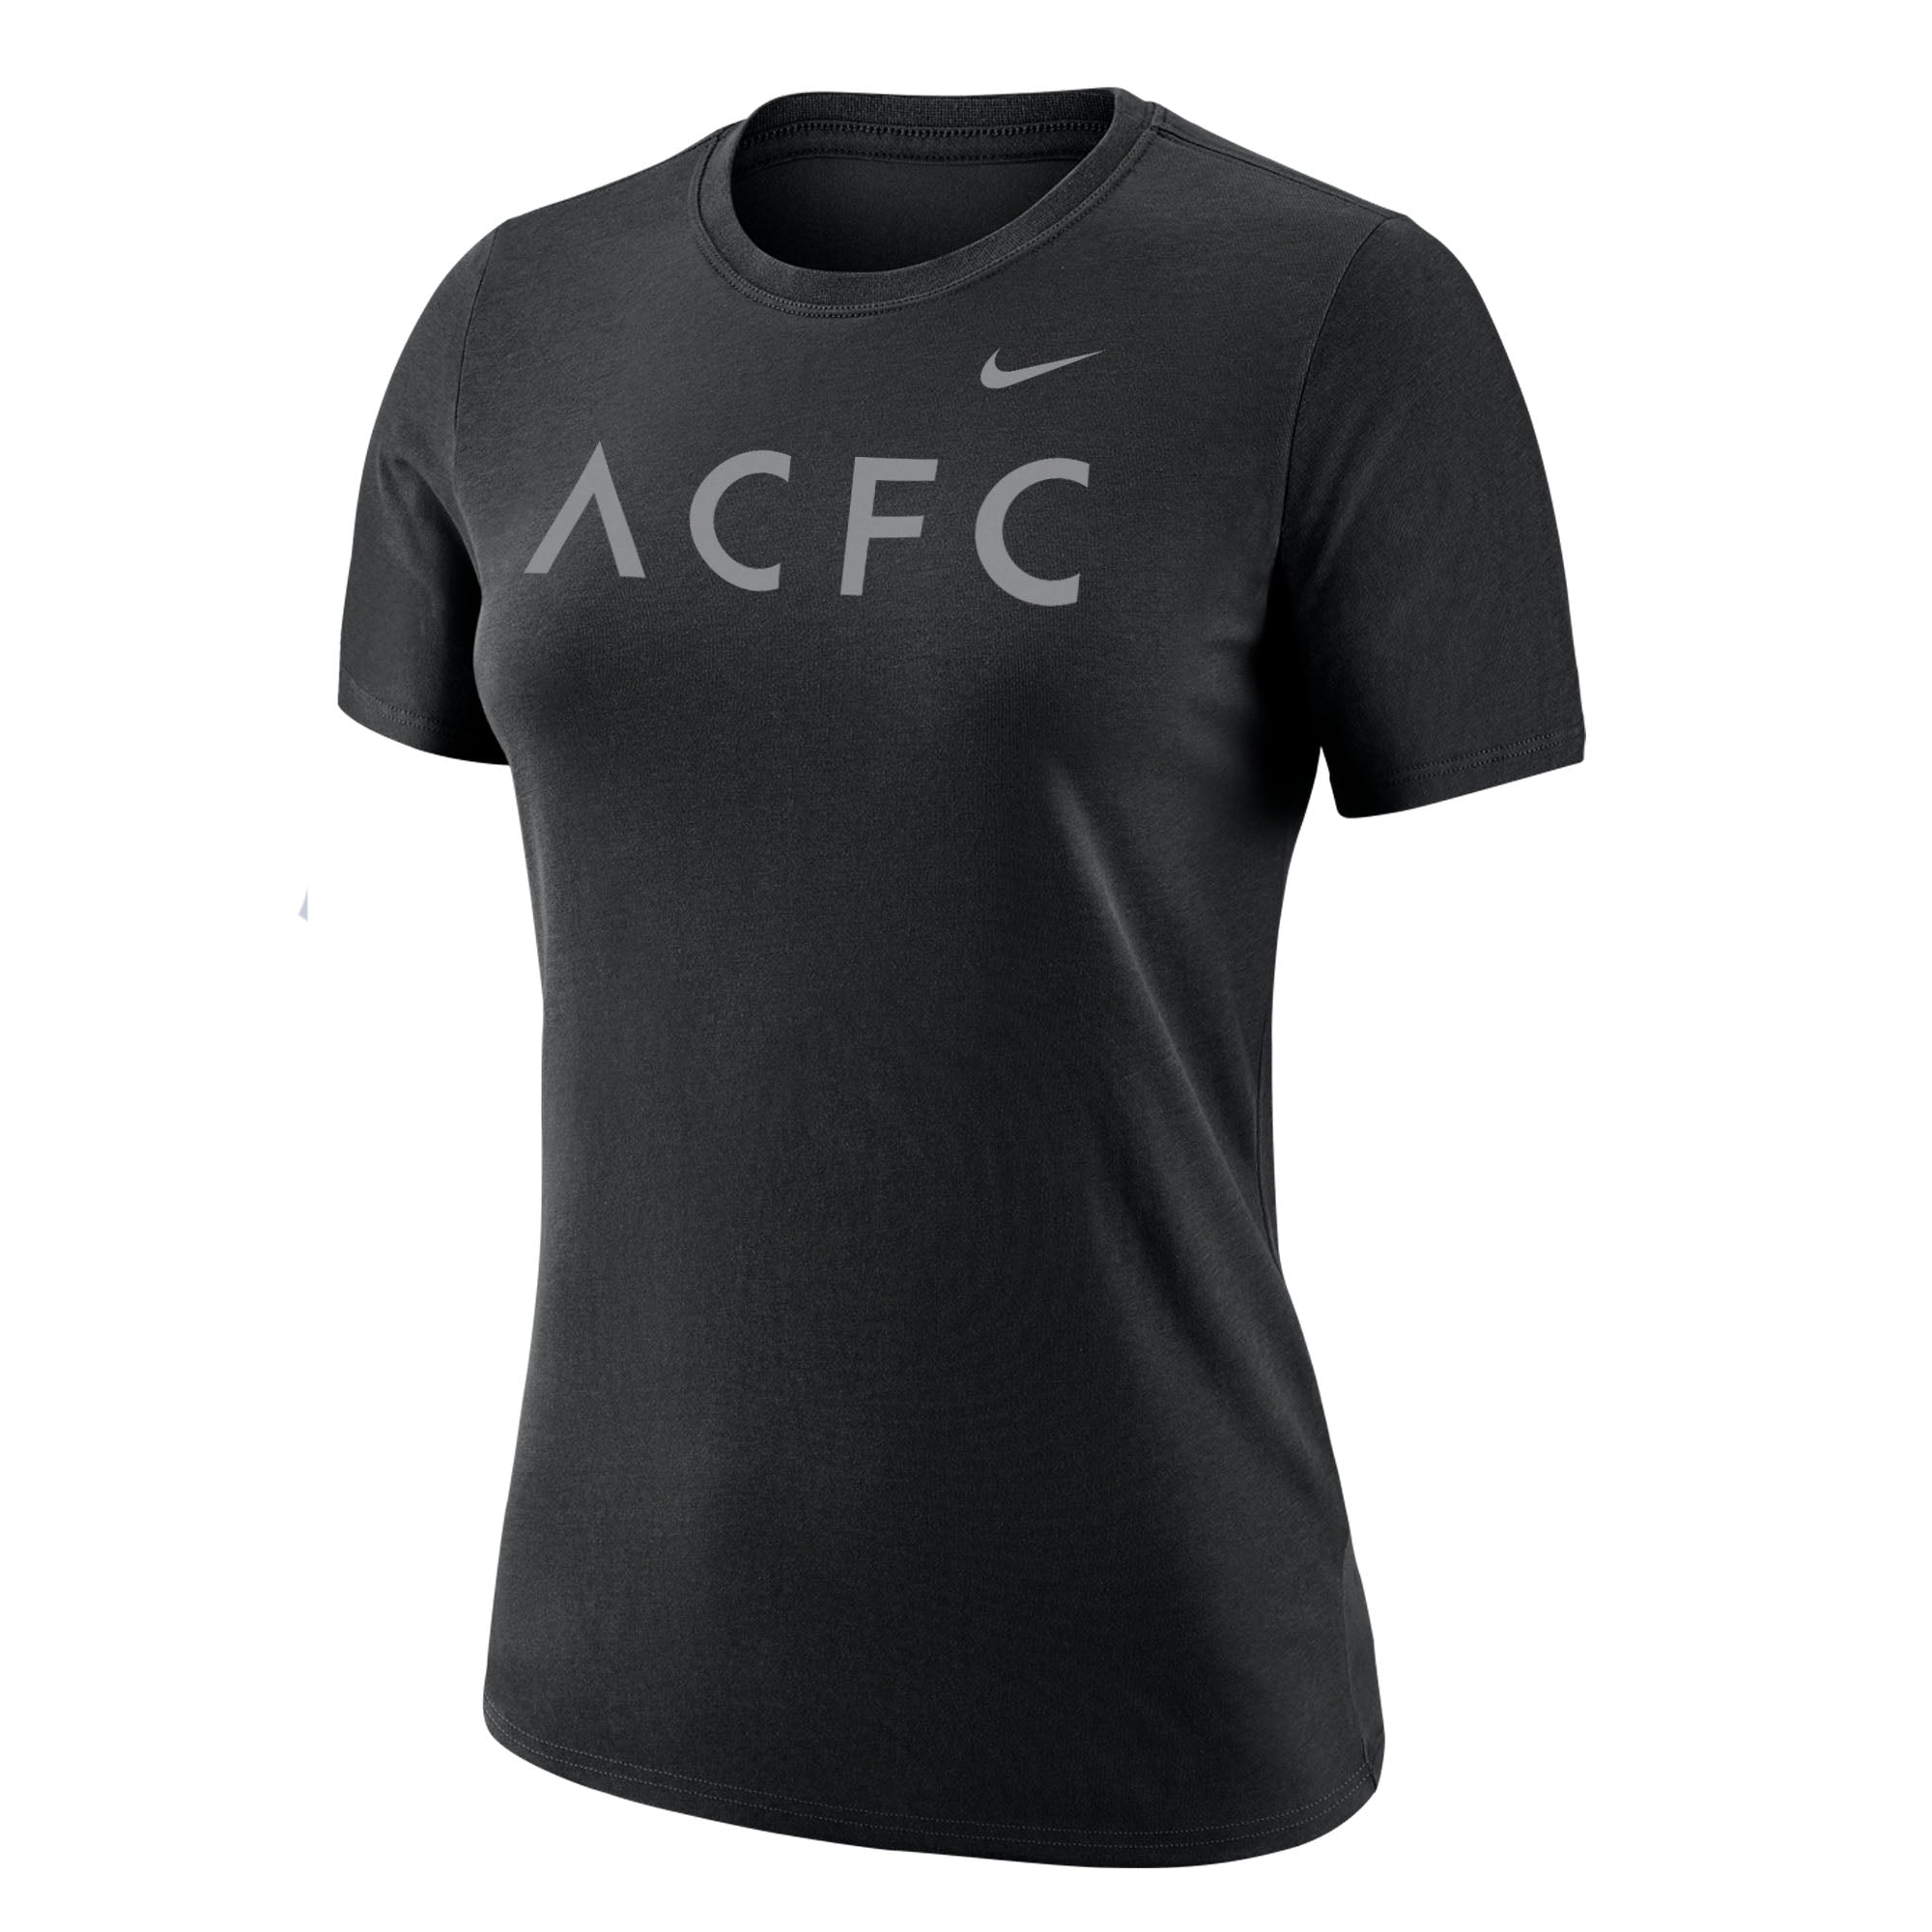 ACFC Nike Women's Black Dri-FIT Short Sleeve T-Shirt